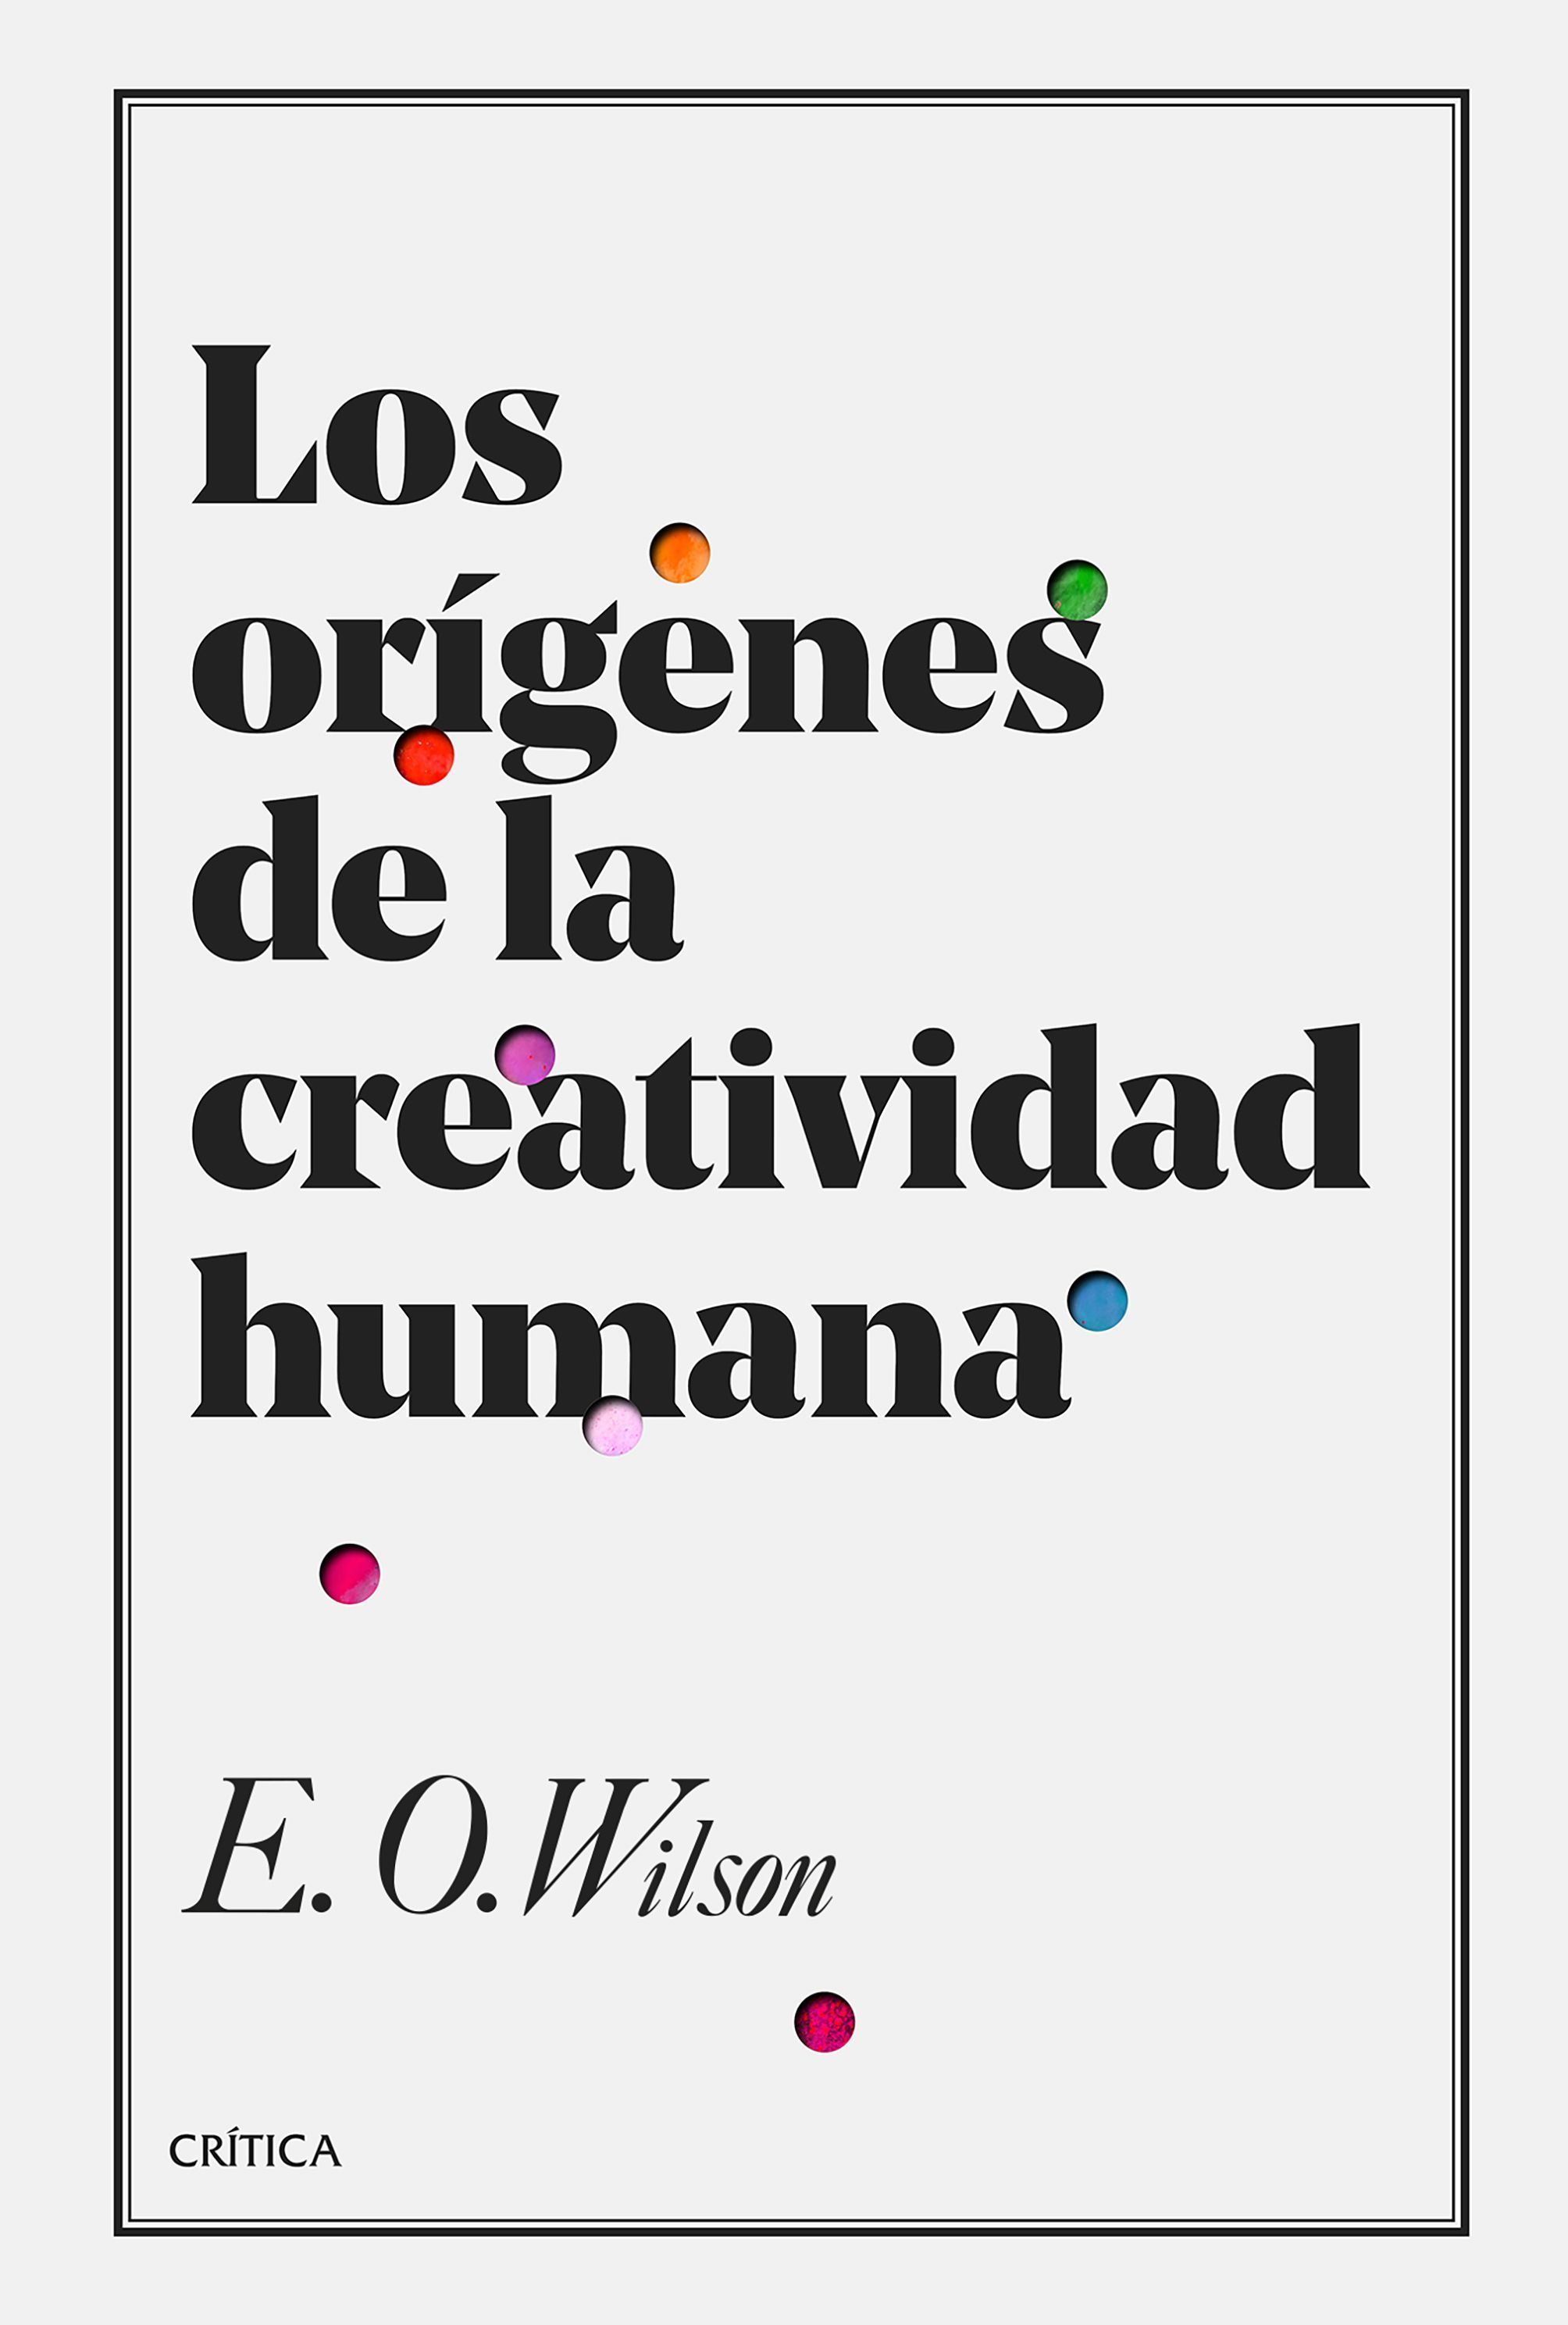 LOS ORÍGENES DE LA CREATIVIDAD HUMANA. [NO HAY SUBTÍTULO]